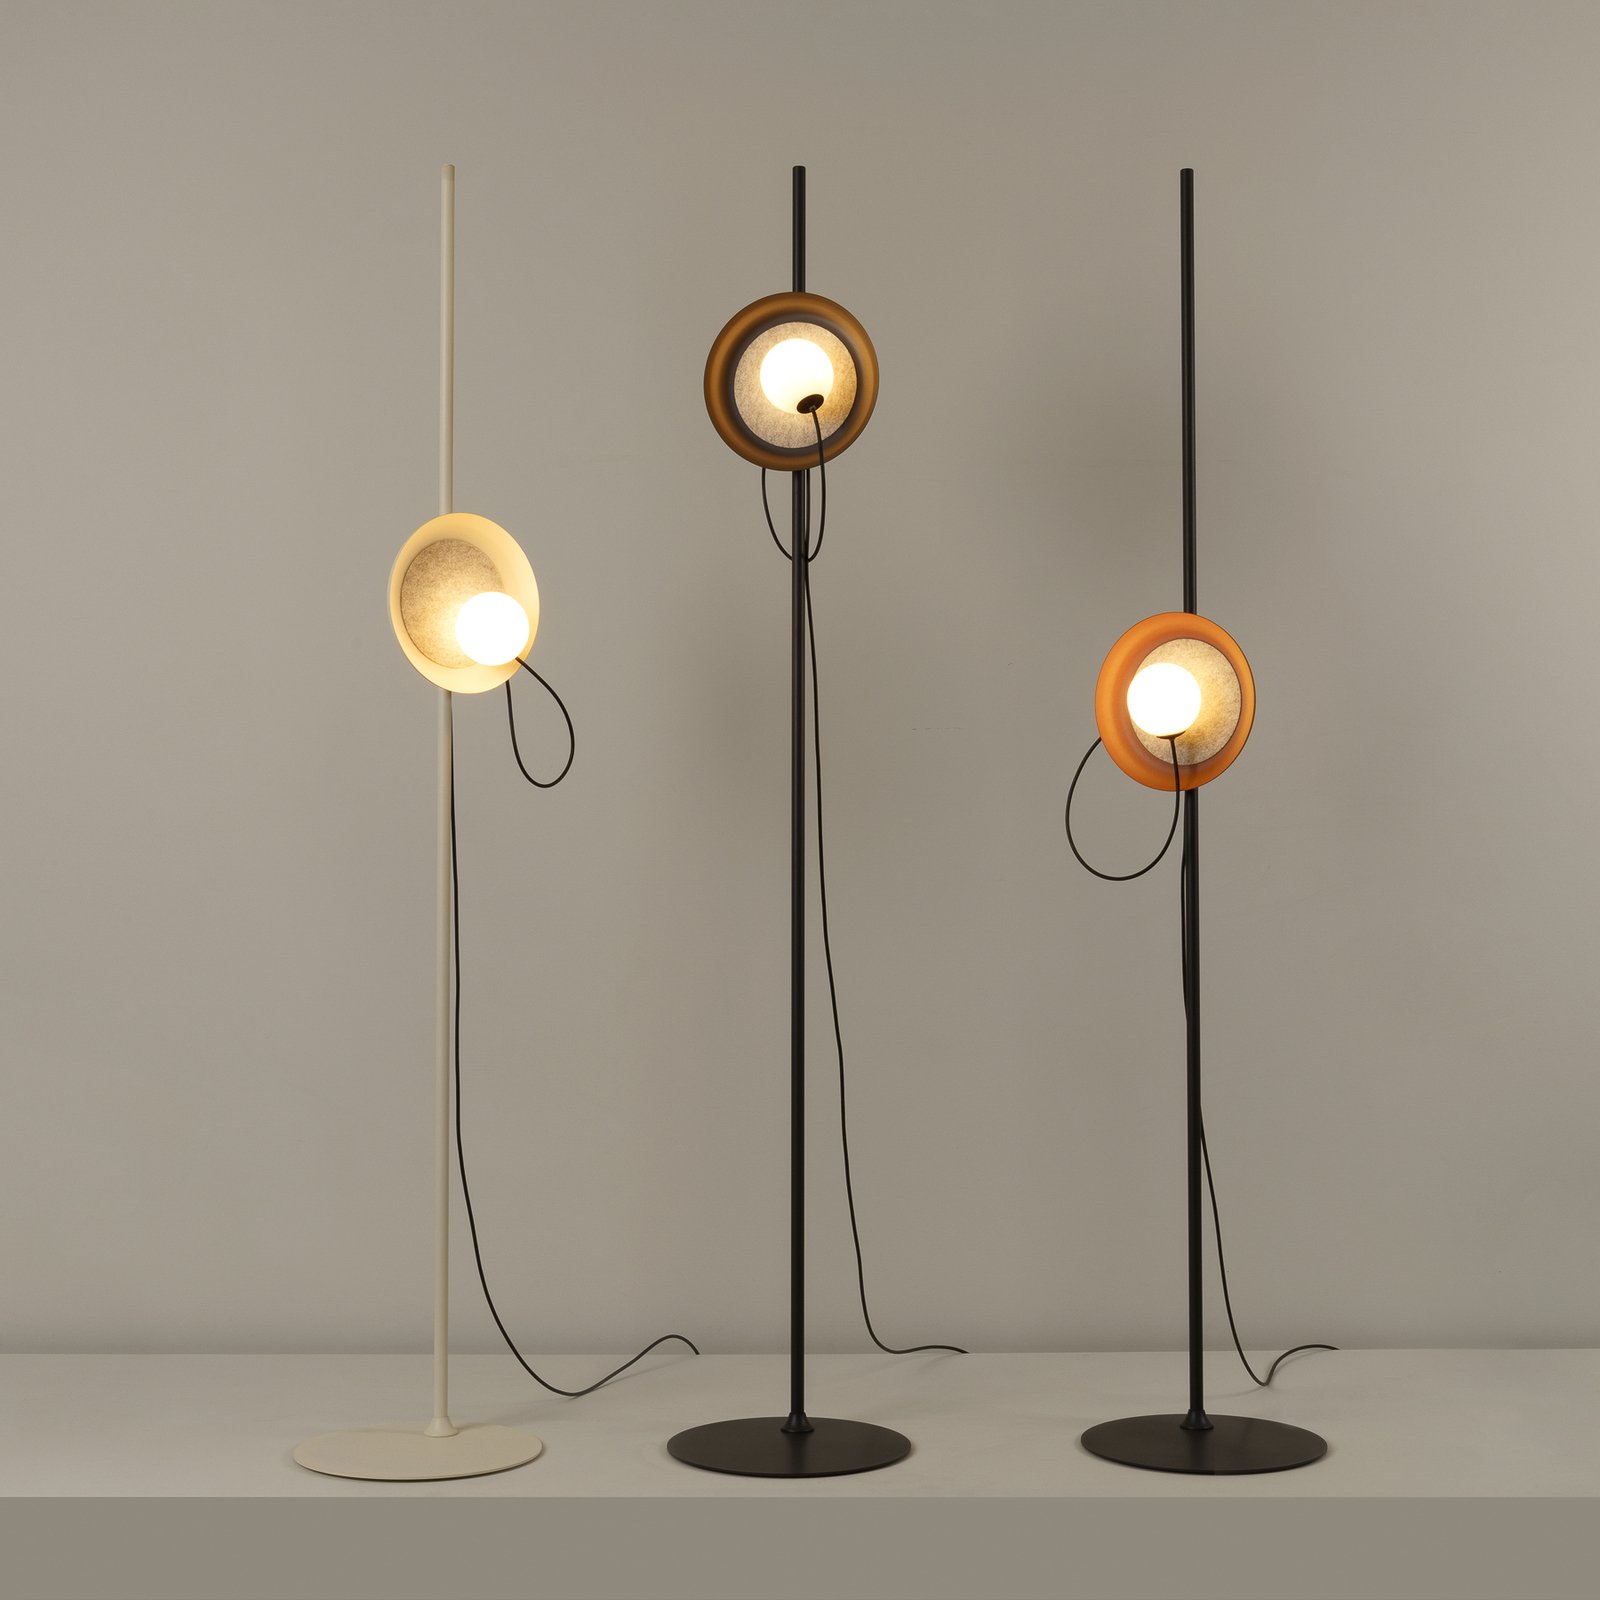 Milan Wire lampe sur pied Ø 24 cm cuivre métallique/anthracite